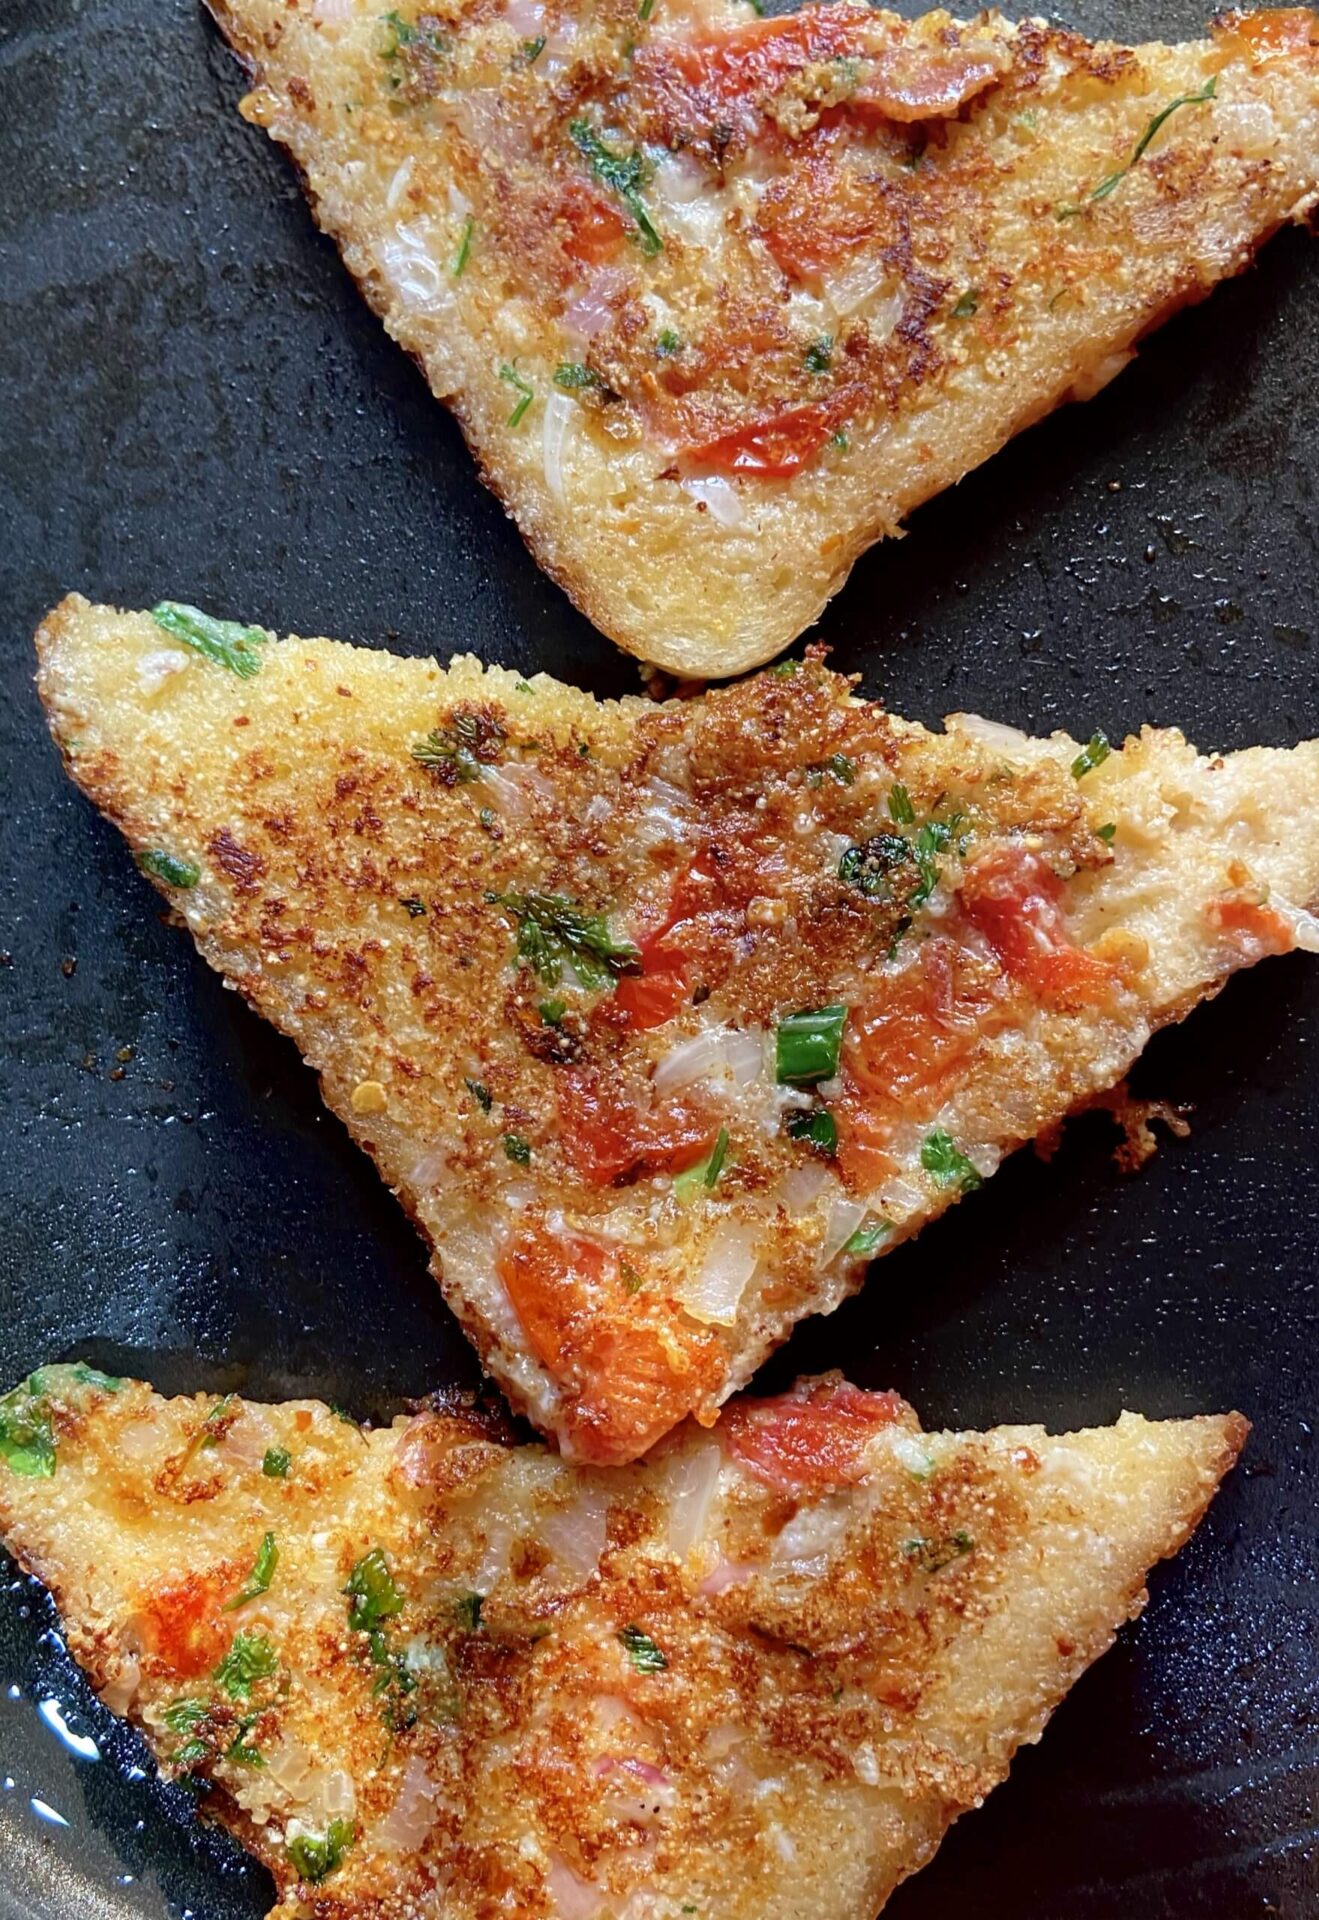 Onion tomato toast|Easy to make onion tomato toast recipe